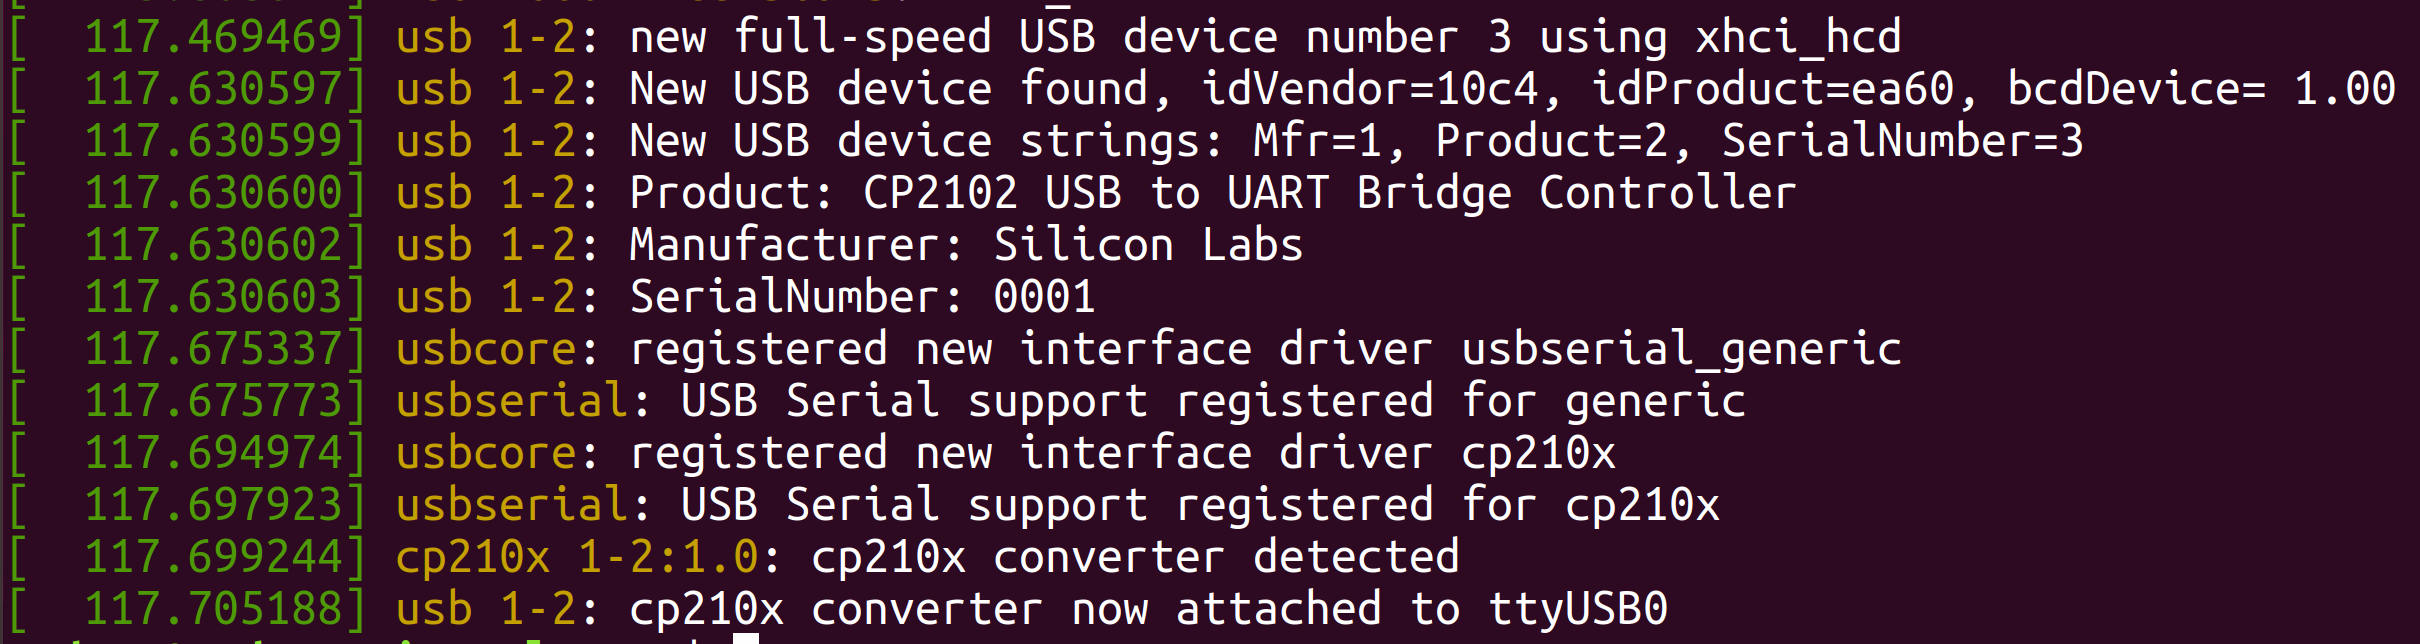 Ubuntu Serial Port Sniffer Linux Ubuntu Screenshot-2020-10-25-at-14.57.46